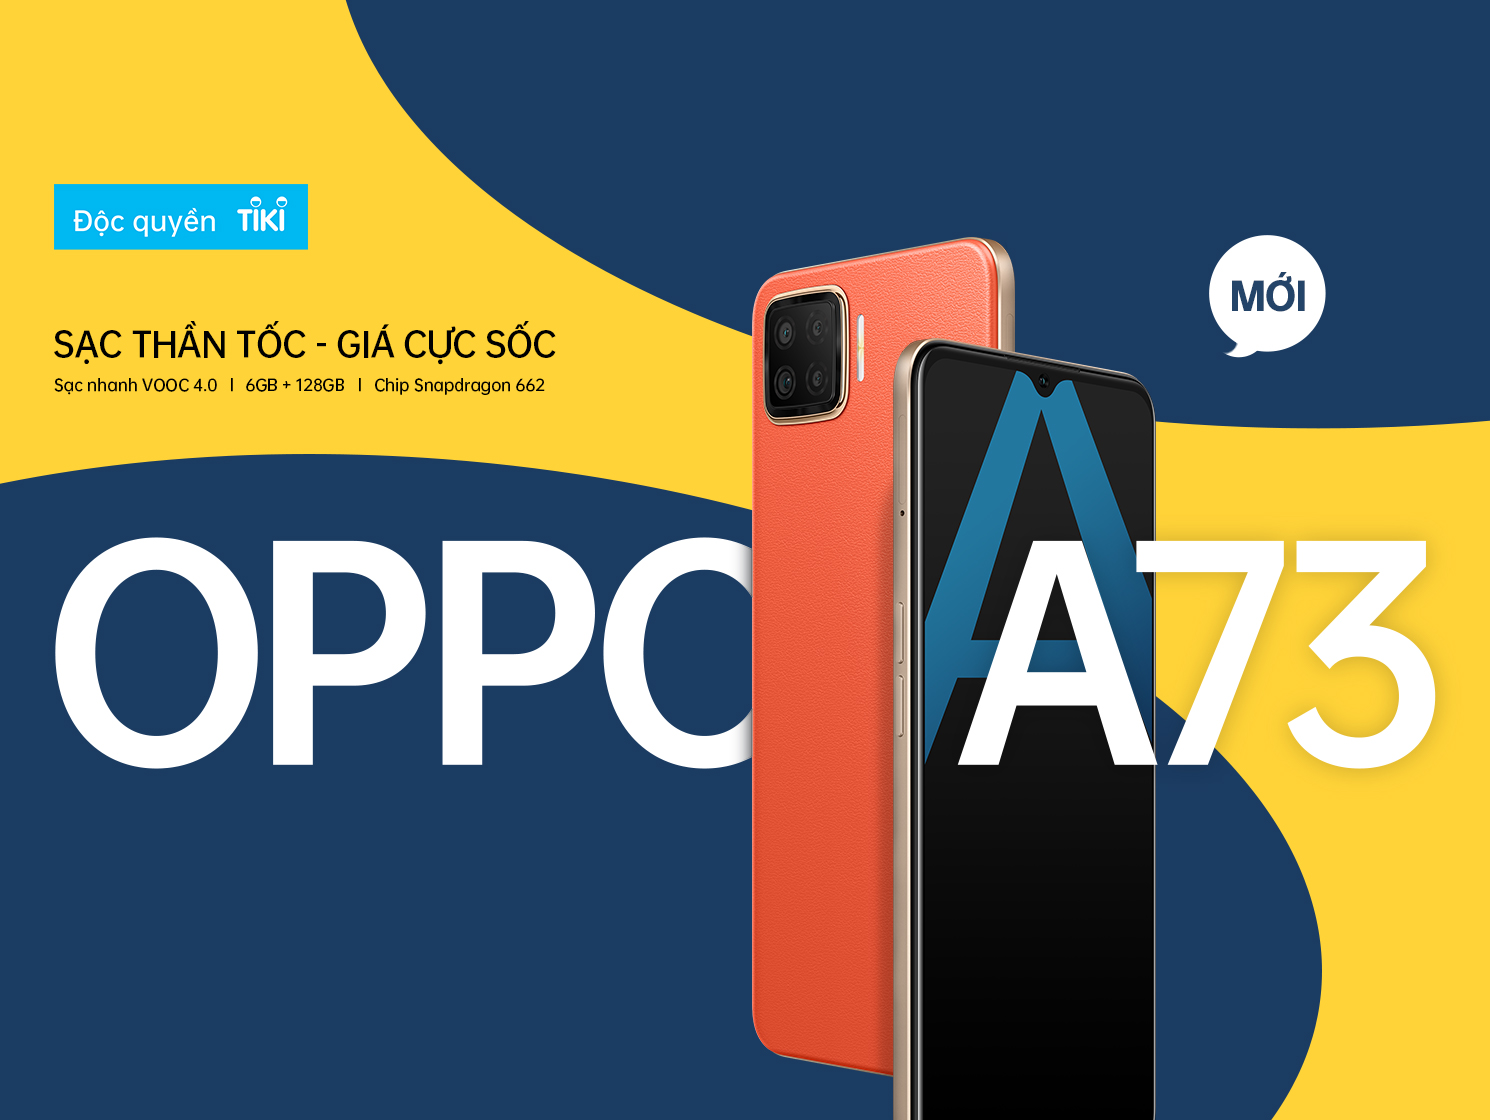 OPPO A73 sạc nhanh giá rẻ: Bạn đang mong muốn tìm một chiếc điện thoại giá rẻ nhưng vẫn có tính năng sạc nhanh để giúp tiết kiệm thời gian? OPPO A73 sẽ là lựa chọn hoàn hảo cho bạn. Hãy xem ngay những hình ảnh đẹp và chi tiết sản phẩm này để đưa ra quyết định thông minh nhất.